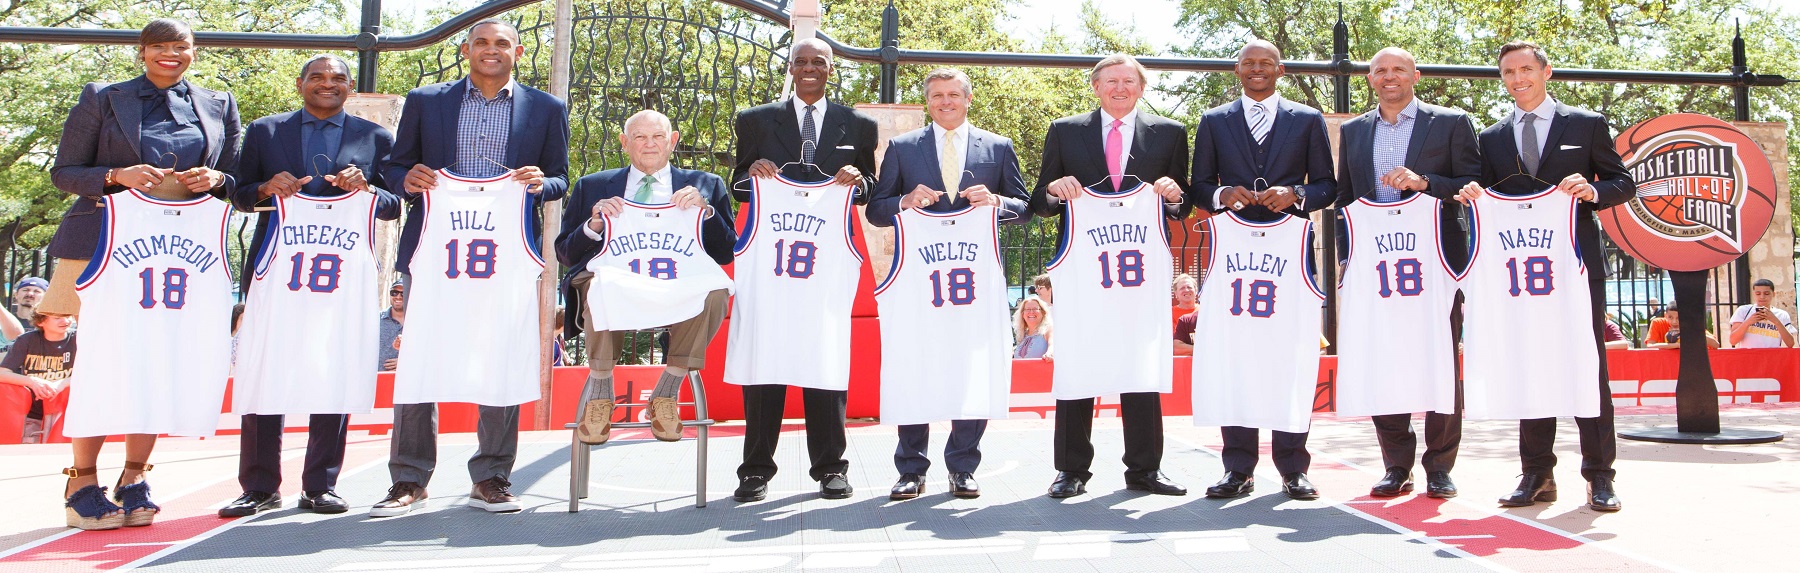 Η μεγάλη στιγμή του Naismith Memorial Basketball Hall of Fame για το 2018 πλησιάζει…